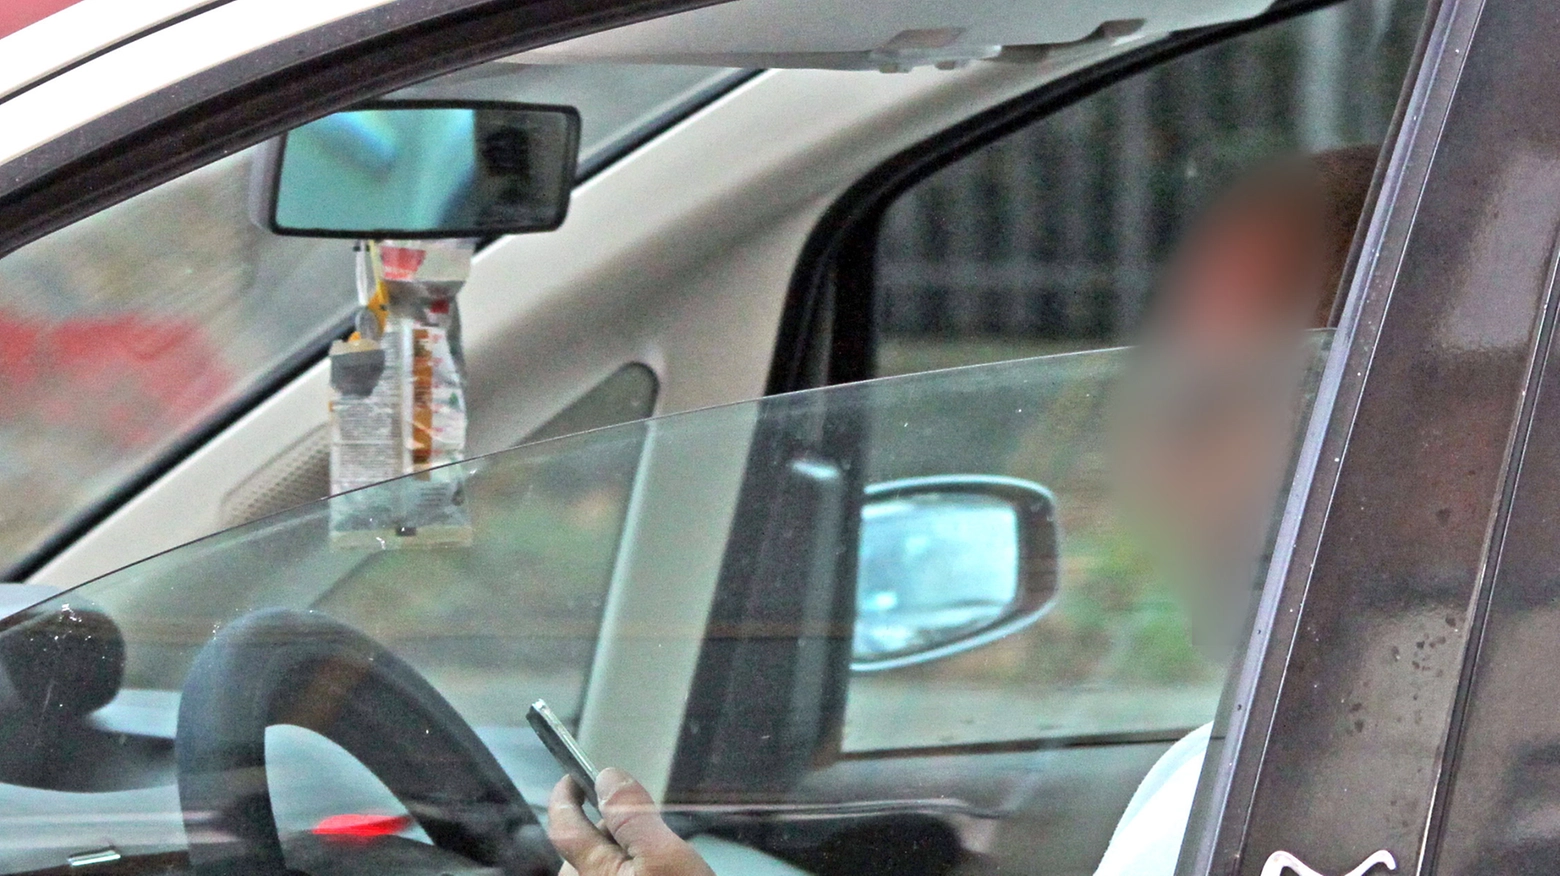 Un automobilista che controlla il telefonino (Foto Bove)